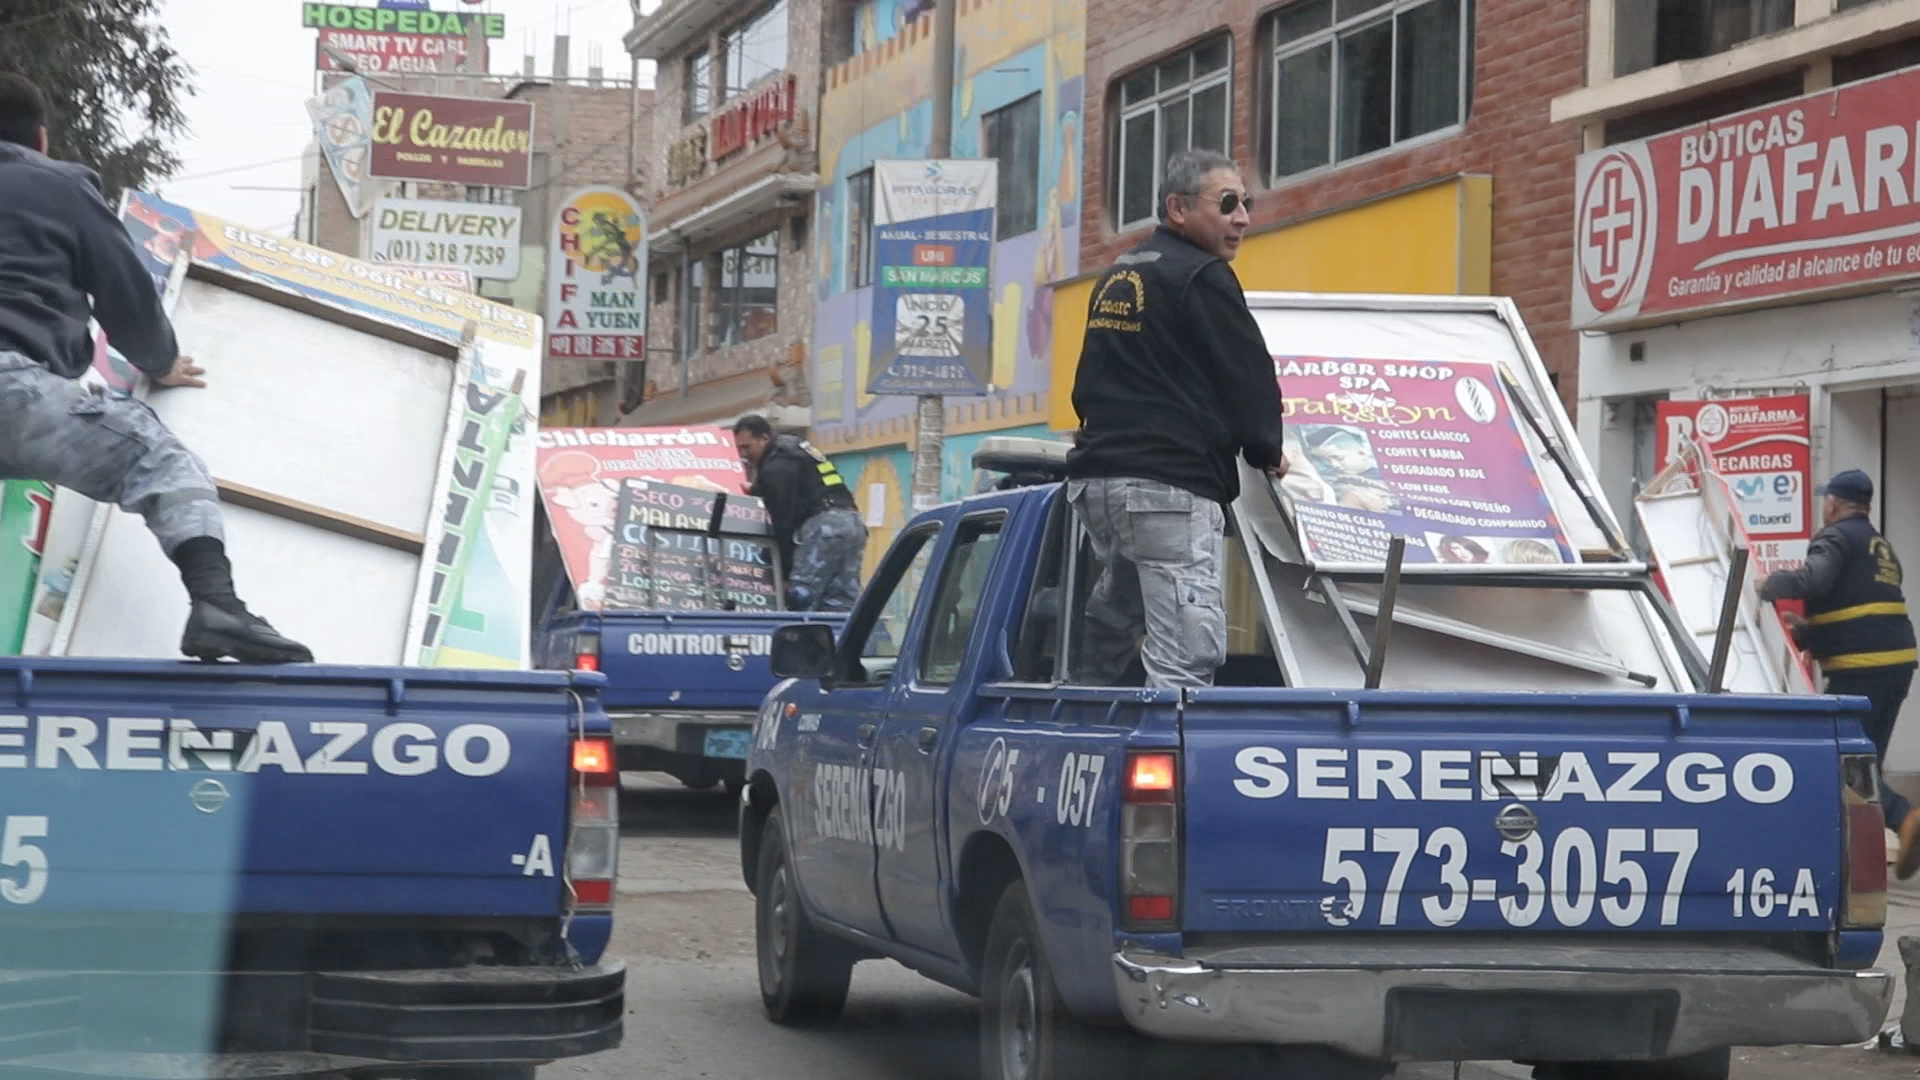 Municipalidad empezó a desbloquear las vías públicas de carteles y banners que impiden el paso seguro